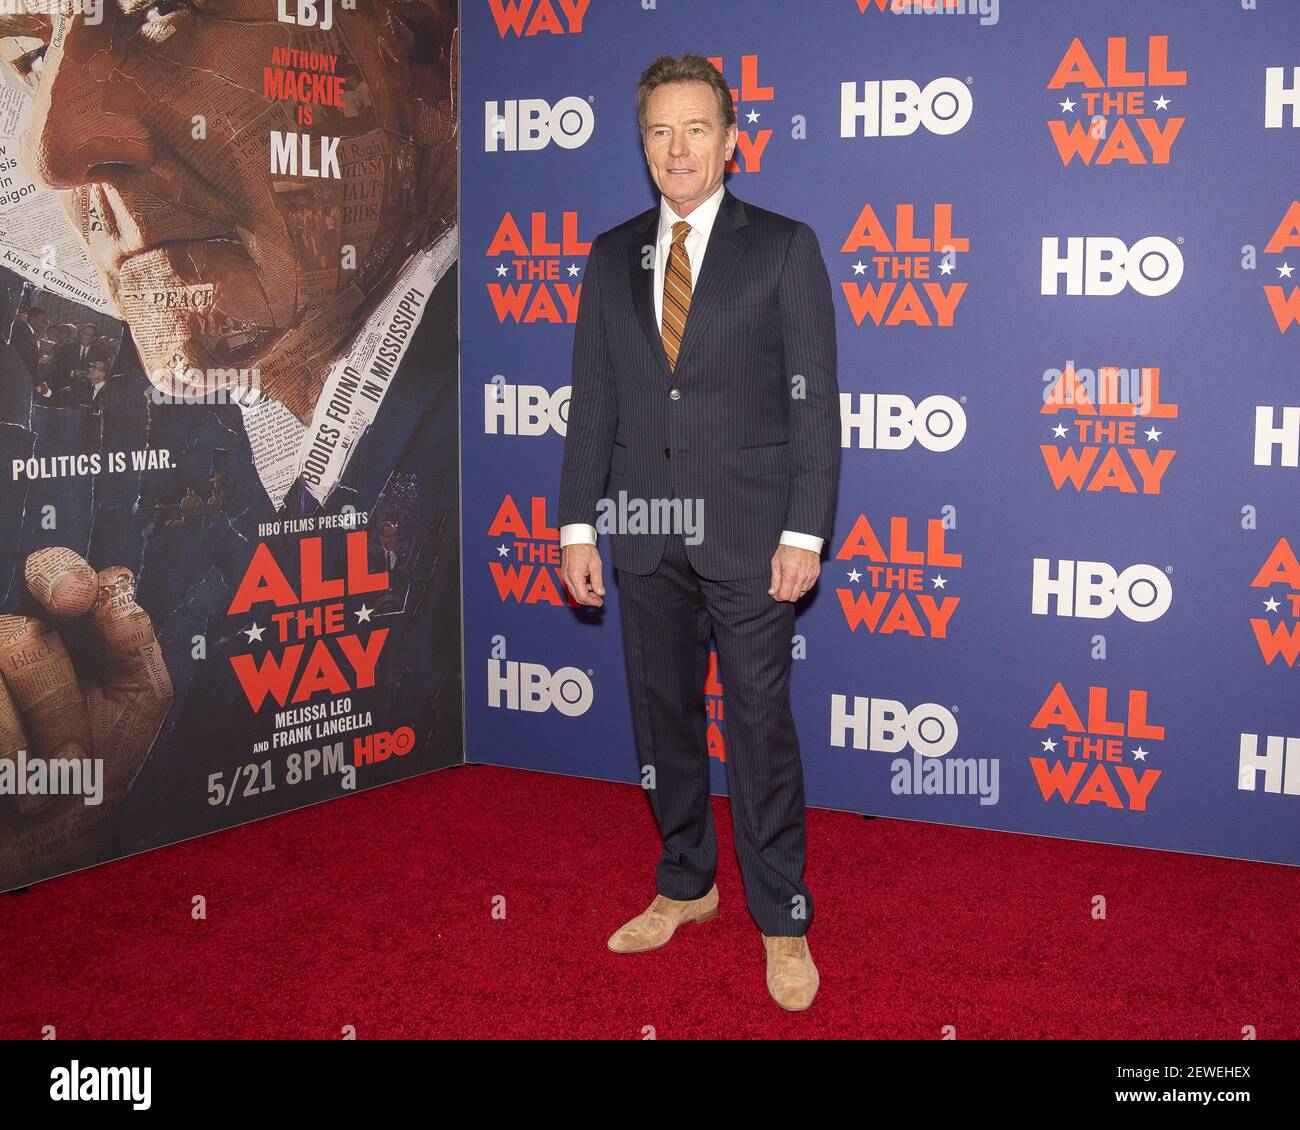 El actor Bryan Cranston participa en una llamada de fotos antes de un evento VIP especial y panel de discusión para la producción de HBO Films 'All the Way', en el Appel Room at Jazz at Lincoln Center en la ciudad de Nueva York, NY, EE.UU. El 17 de mayo de 2016. Foto de stock